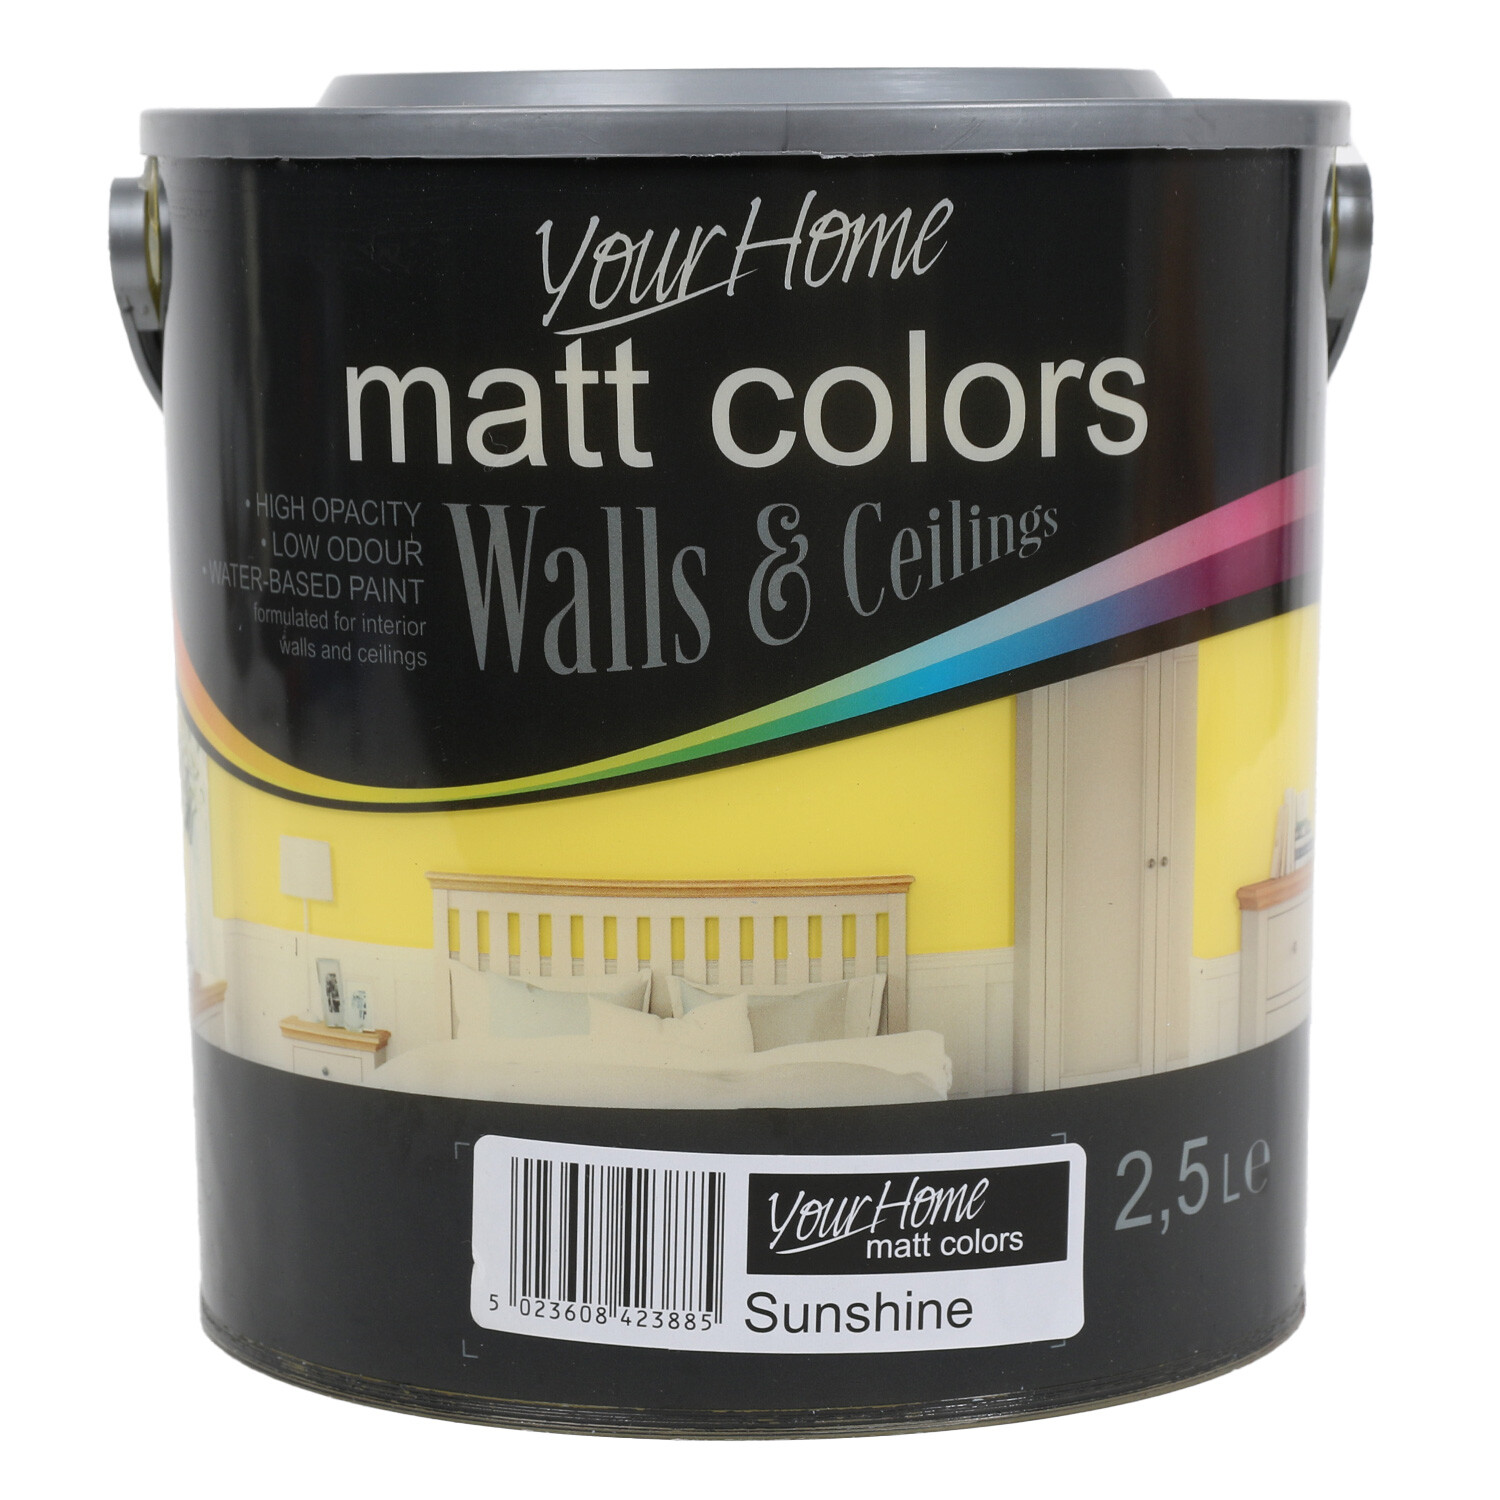 Your Home Walls & Ceilings Sunshine Matt Emulsion Paint 2.5L Image 1